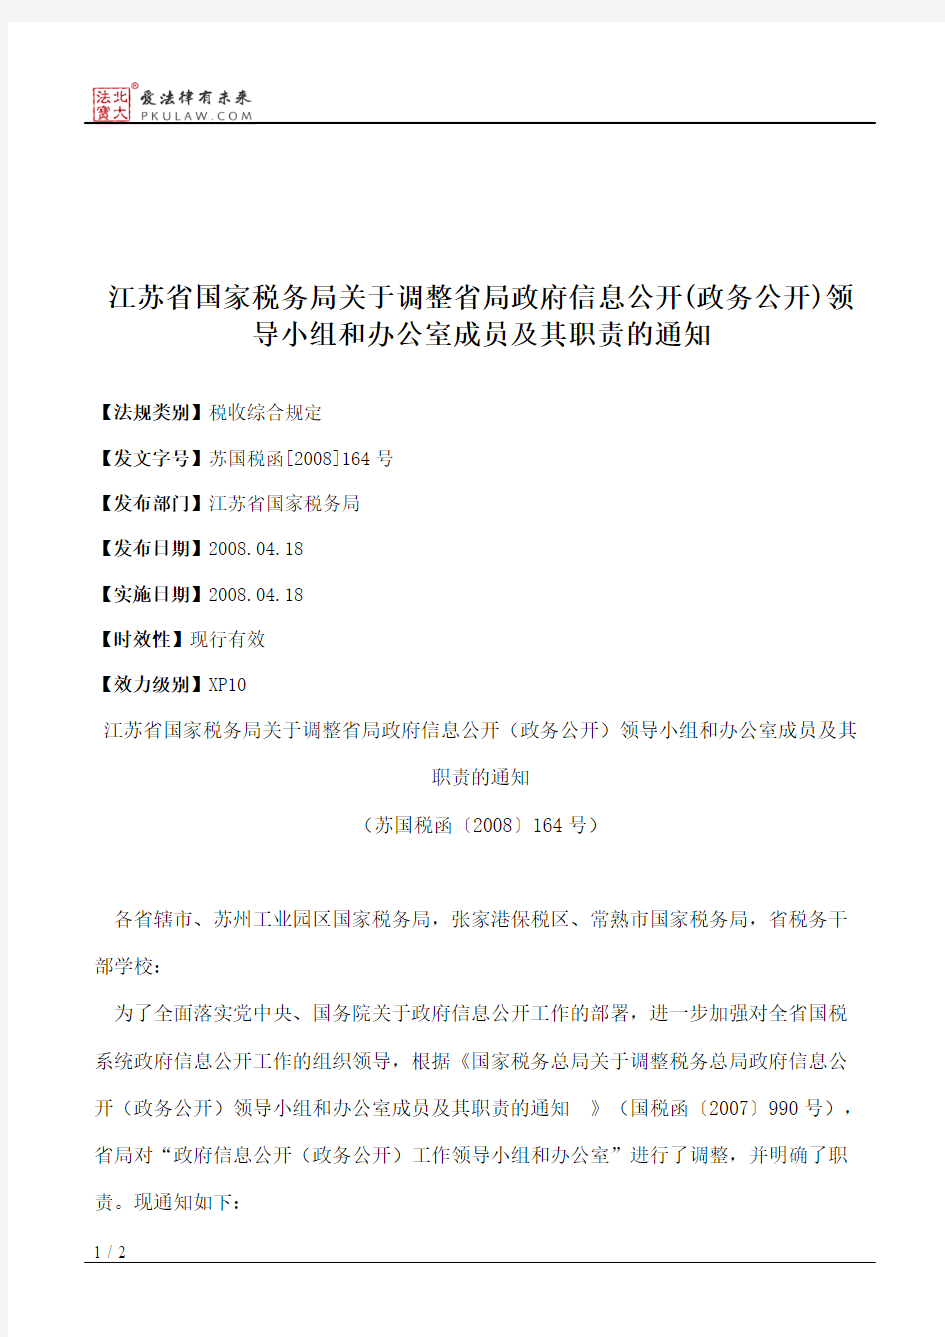 江苏省国家税务局关于调整省局政府信息公开(政务公开)领导小组和